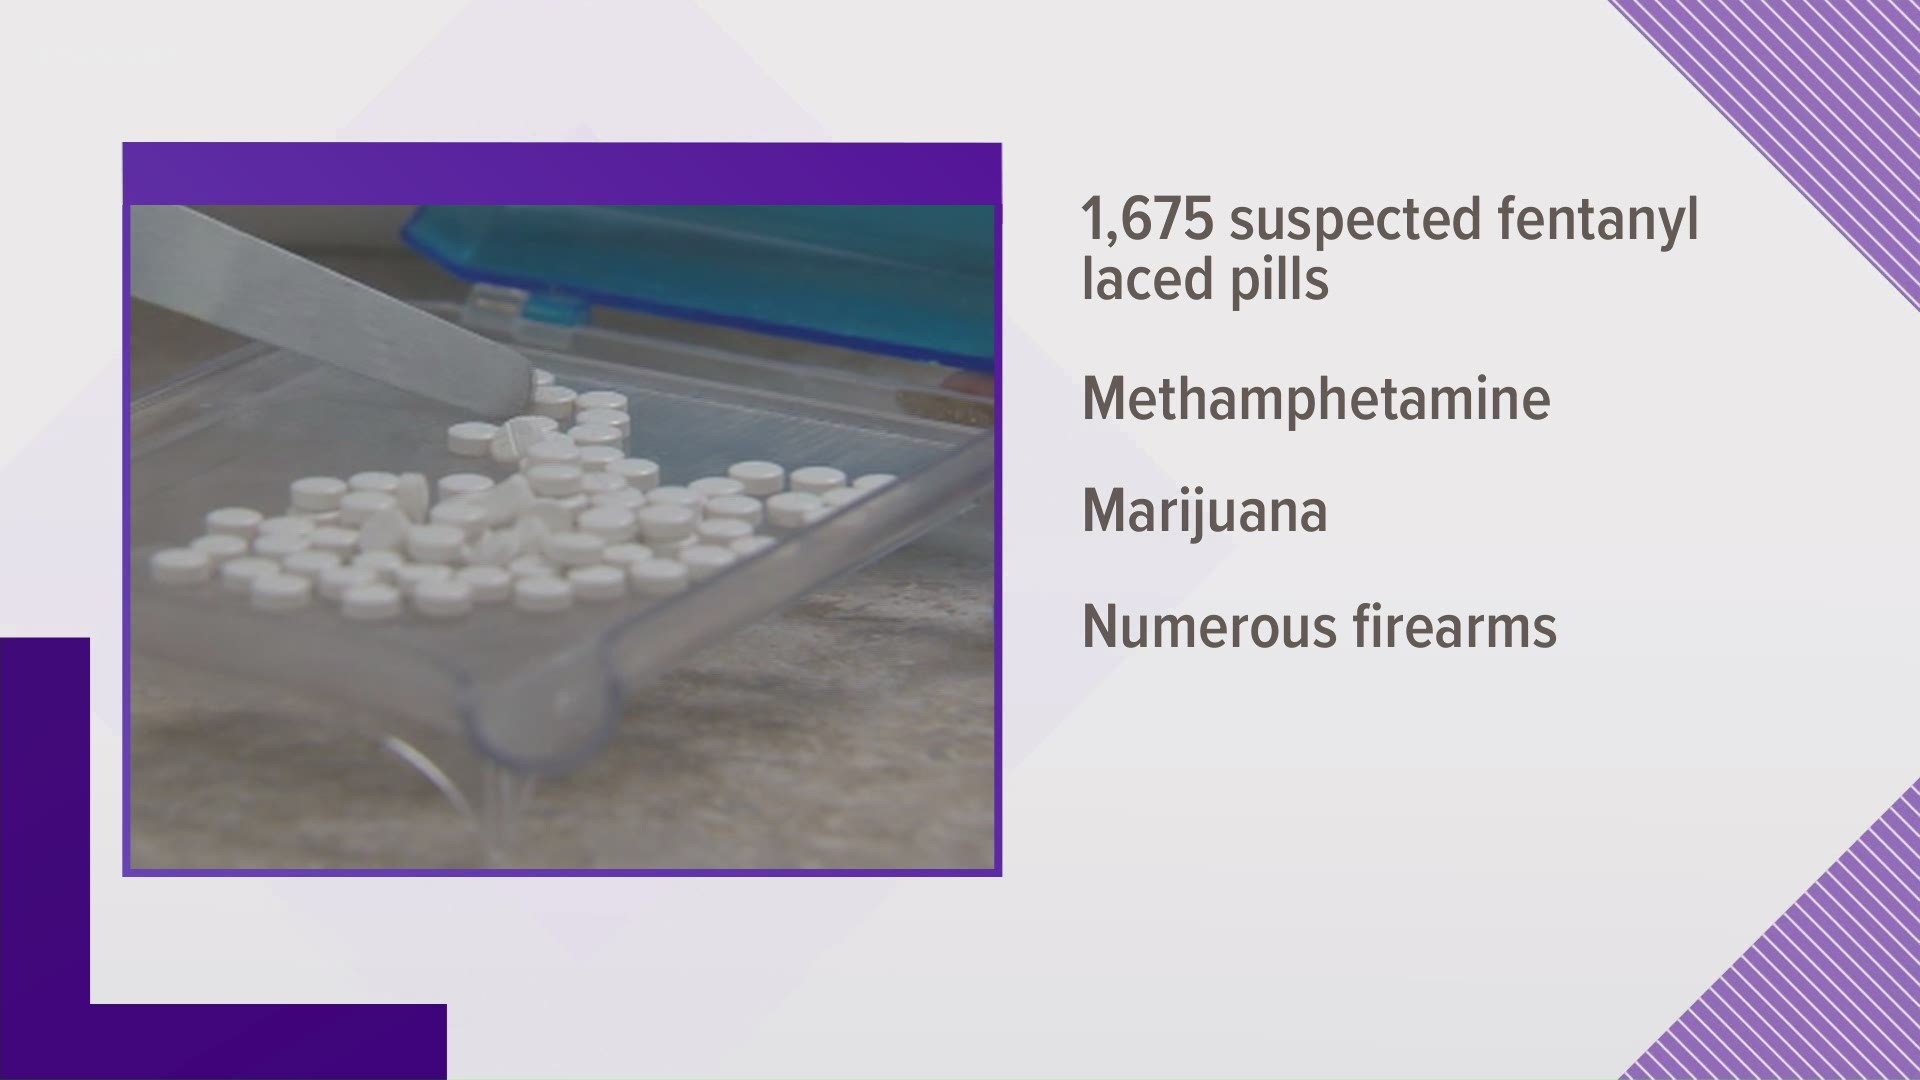 Cedar Park police announced a major drug bust on Wednesday.